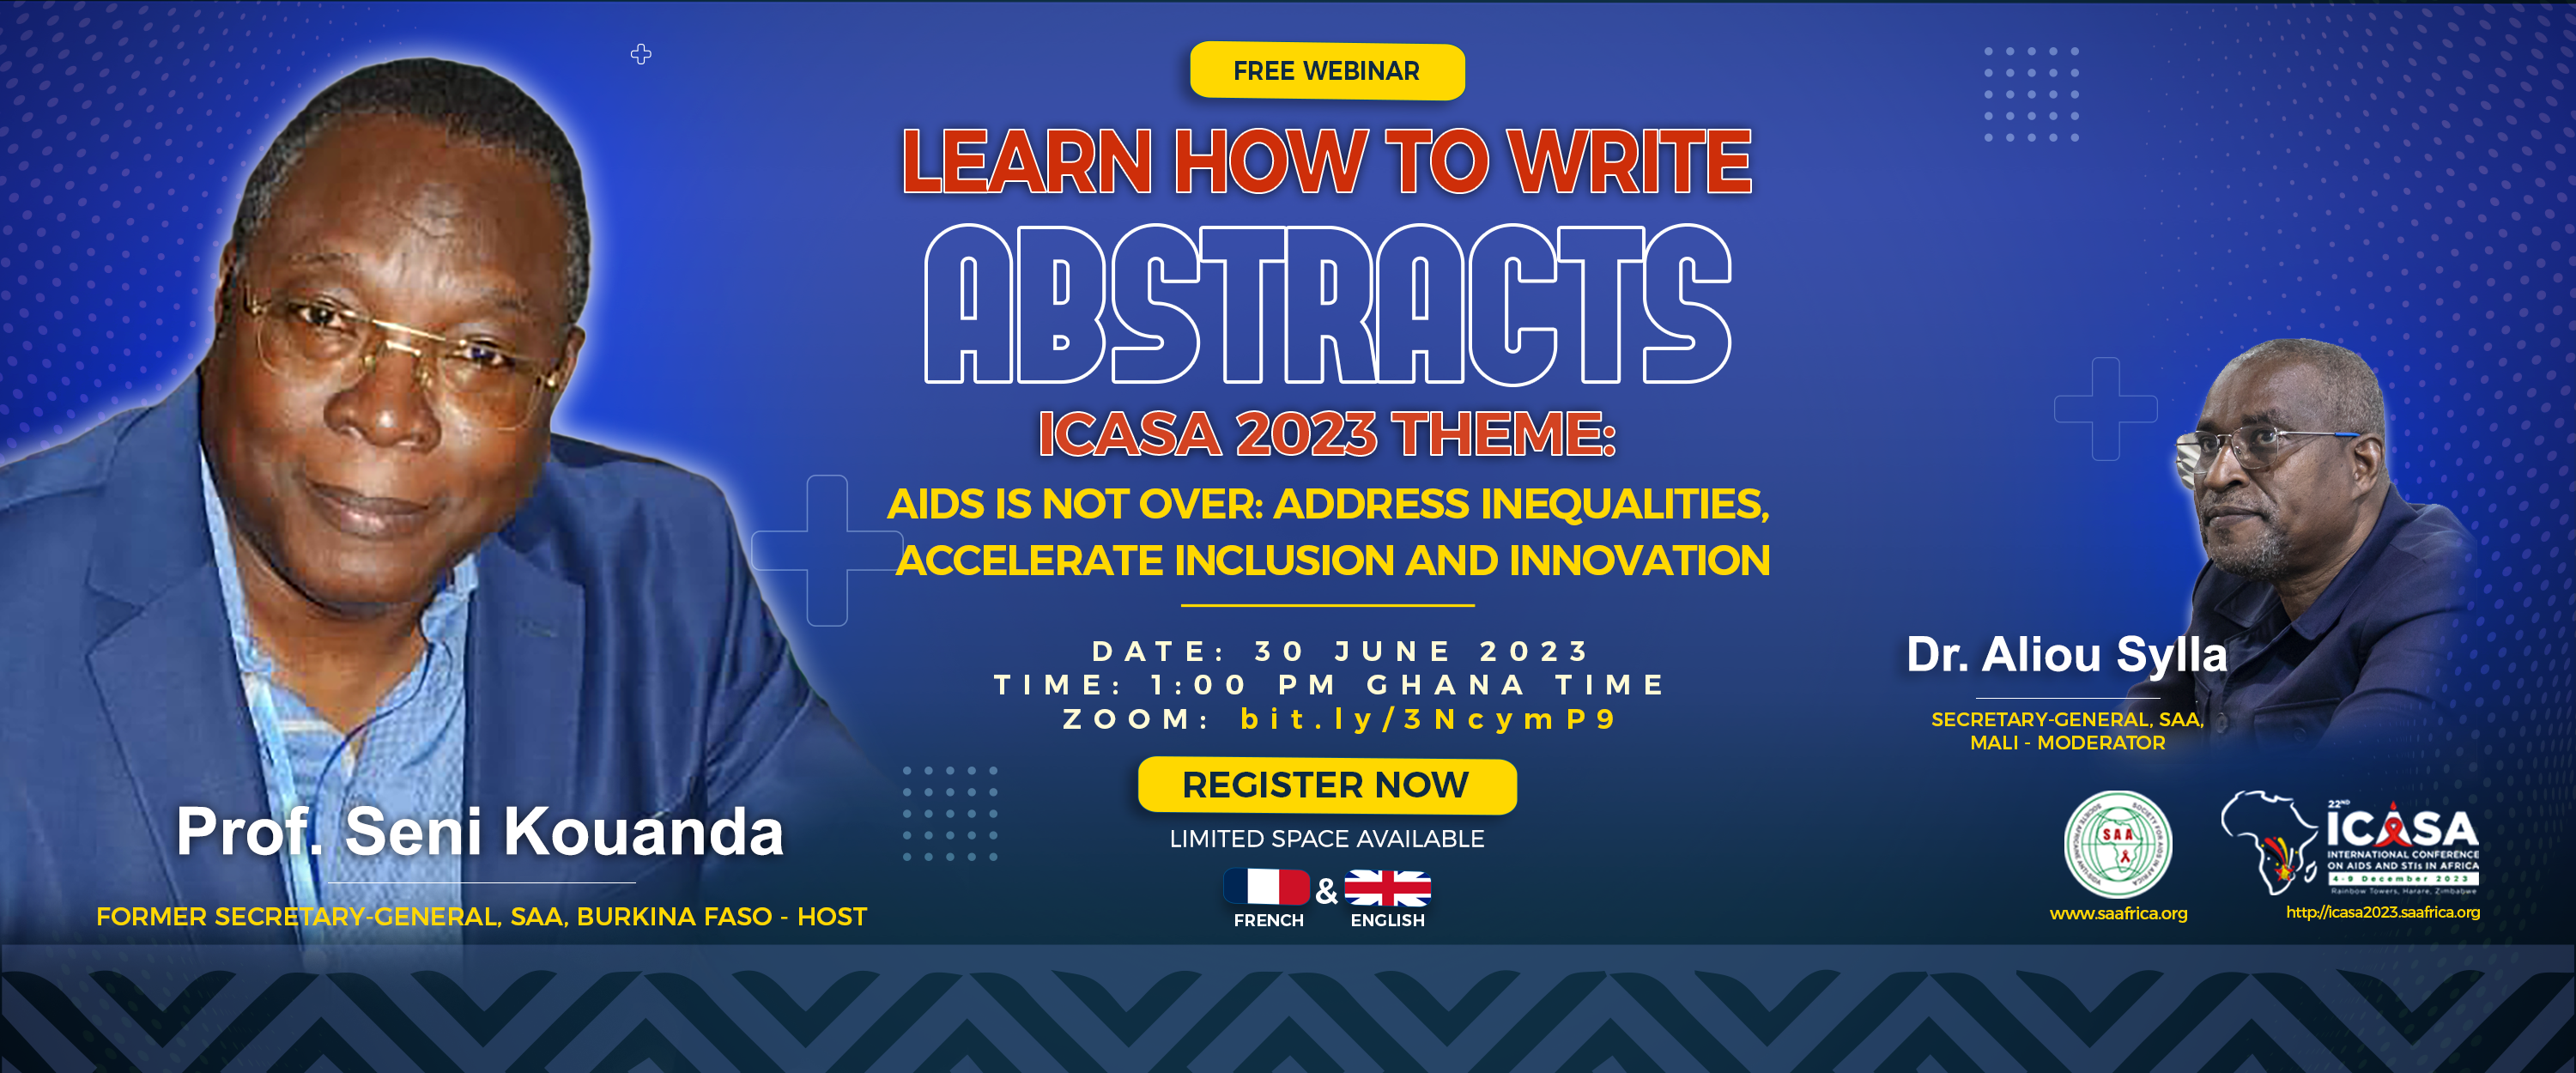 ICASA 2023 FREE WEBINAR: LEARN HOW TO WRITE ABSTRACTS! | COMMENT RÉDIGER UN RÉSUMÉ SCIENTIFIQUE